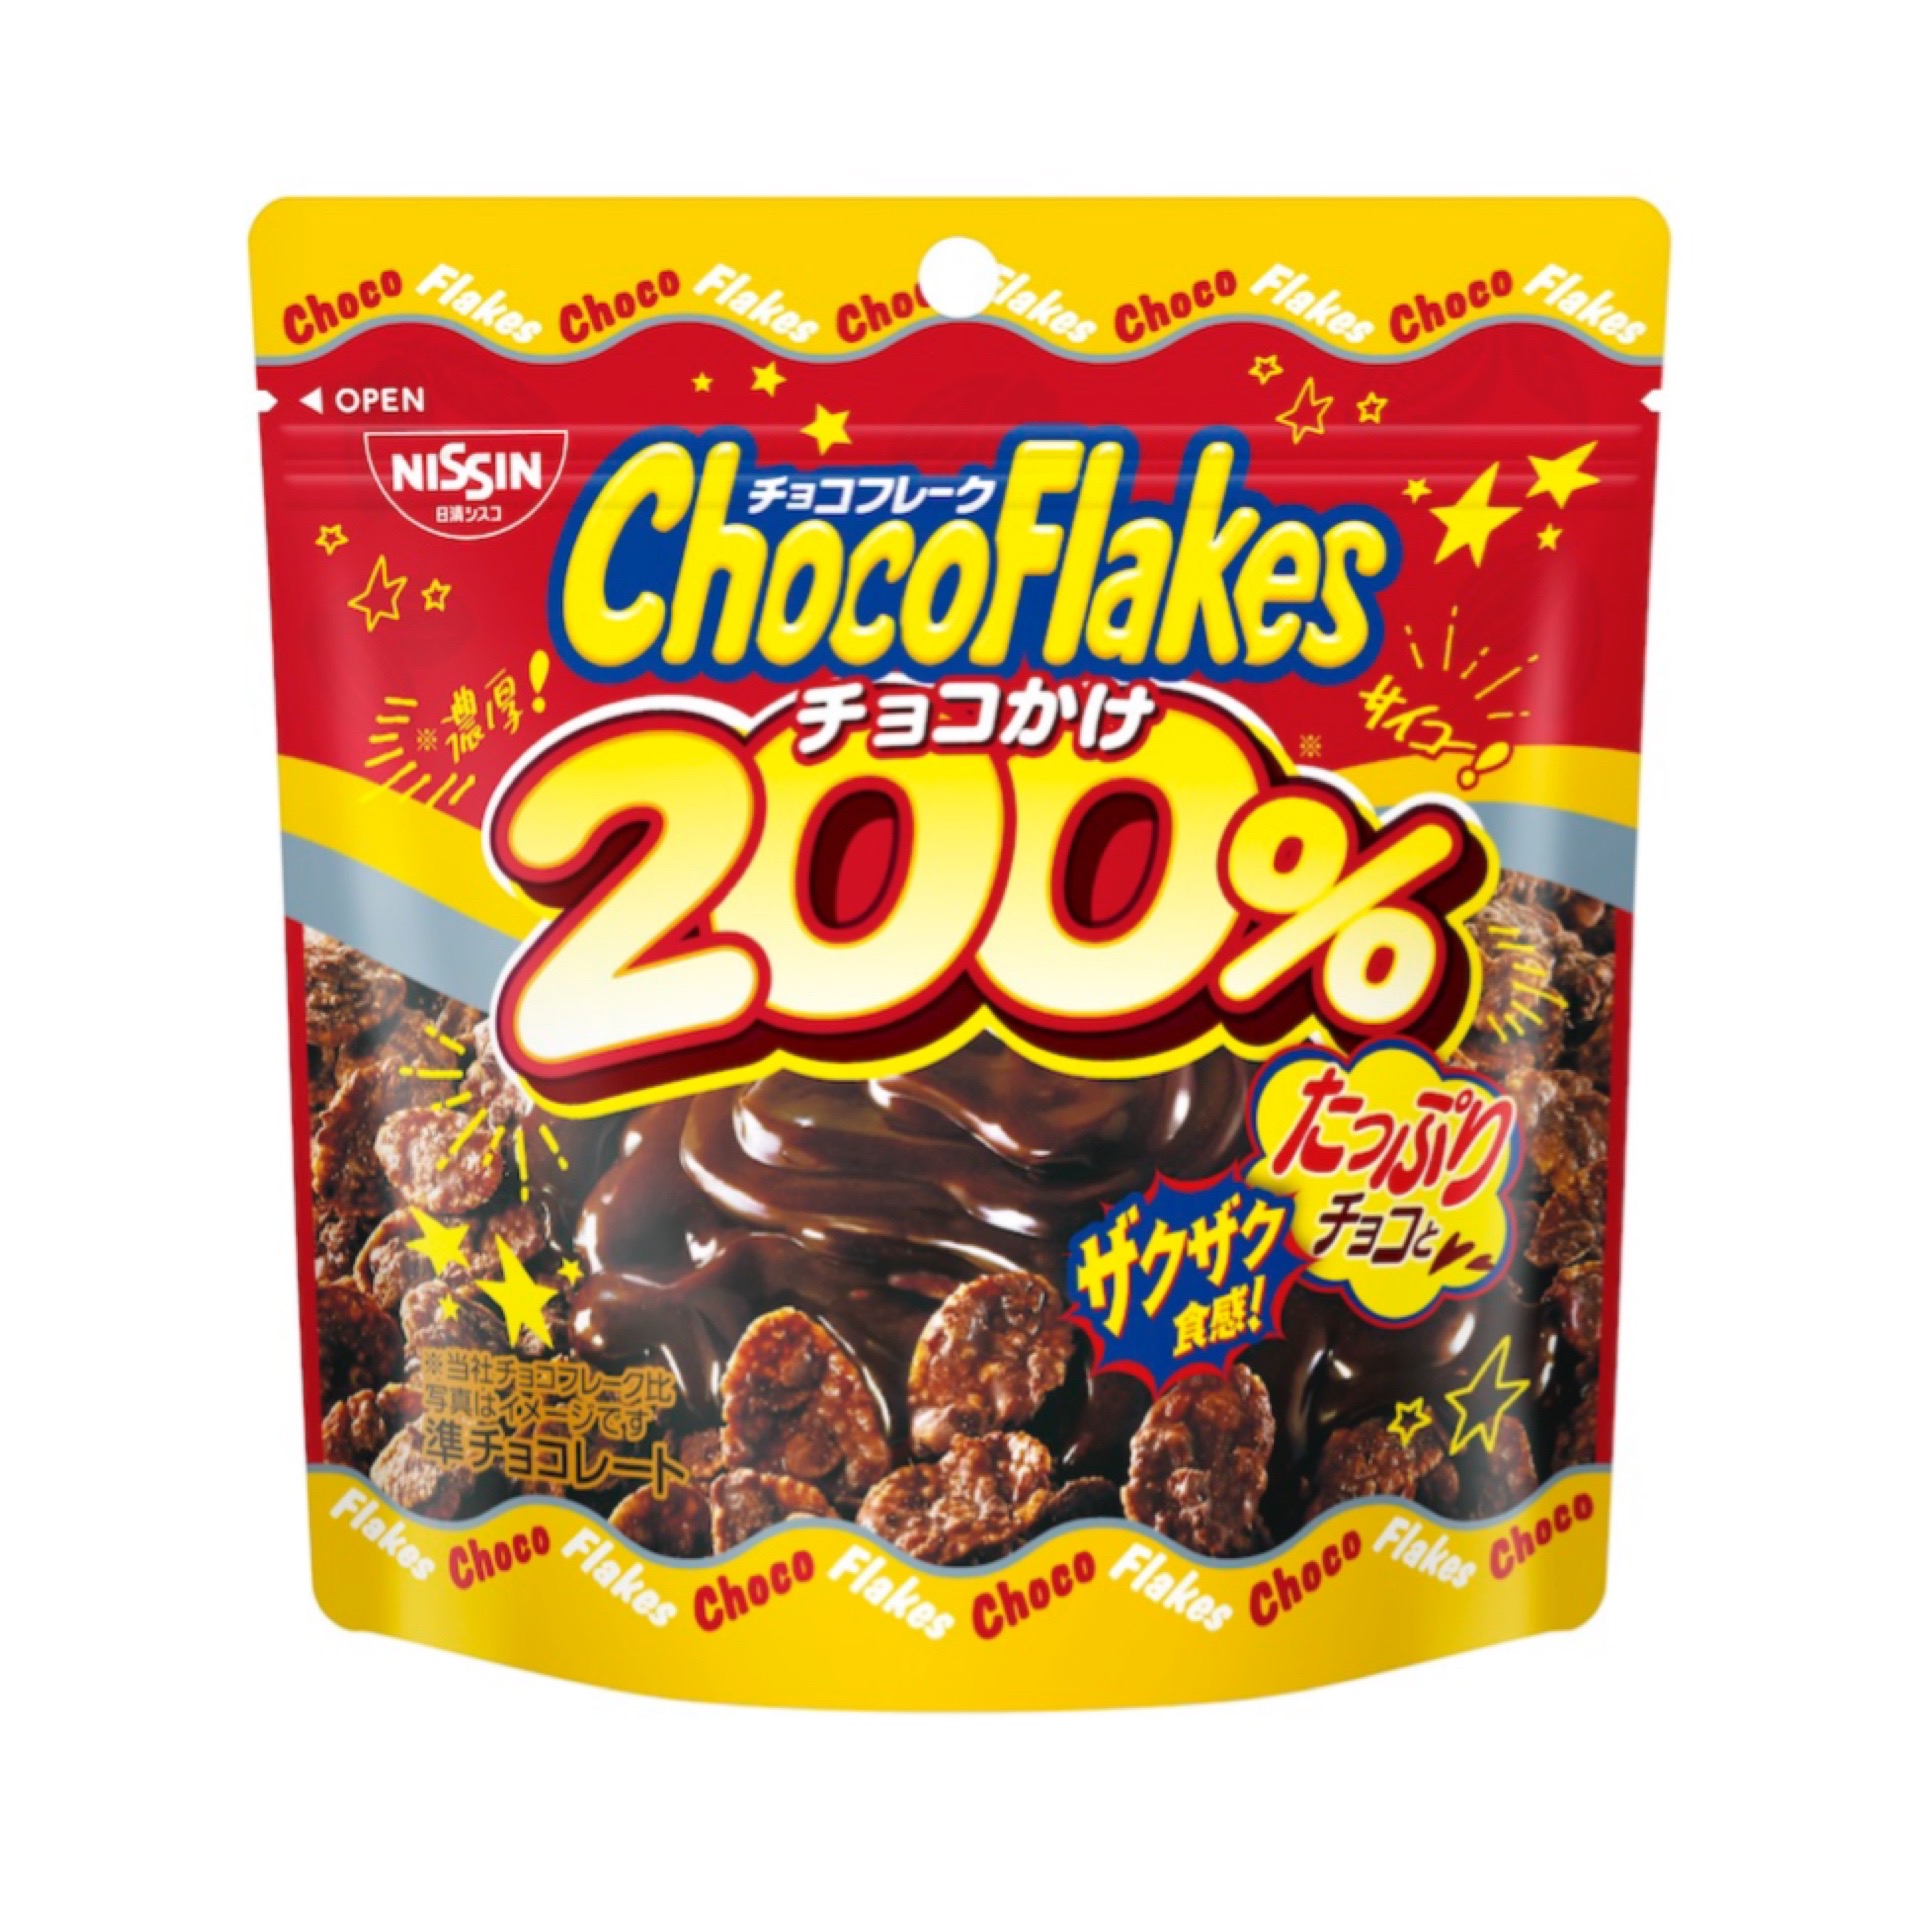 一度開けたら止まらない 「チョコフレーク」 から新商品が登場🍫🤎「チョコフレーク チョコかけ200%」 「チョコフレーク マイルドビター」を9月5日(月)に新発売🥰